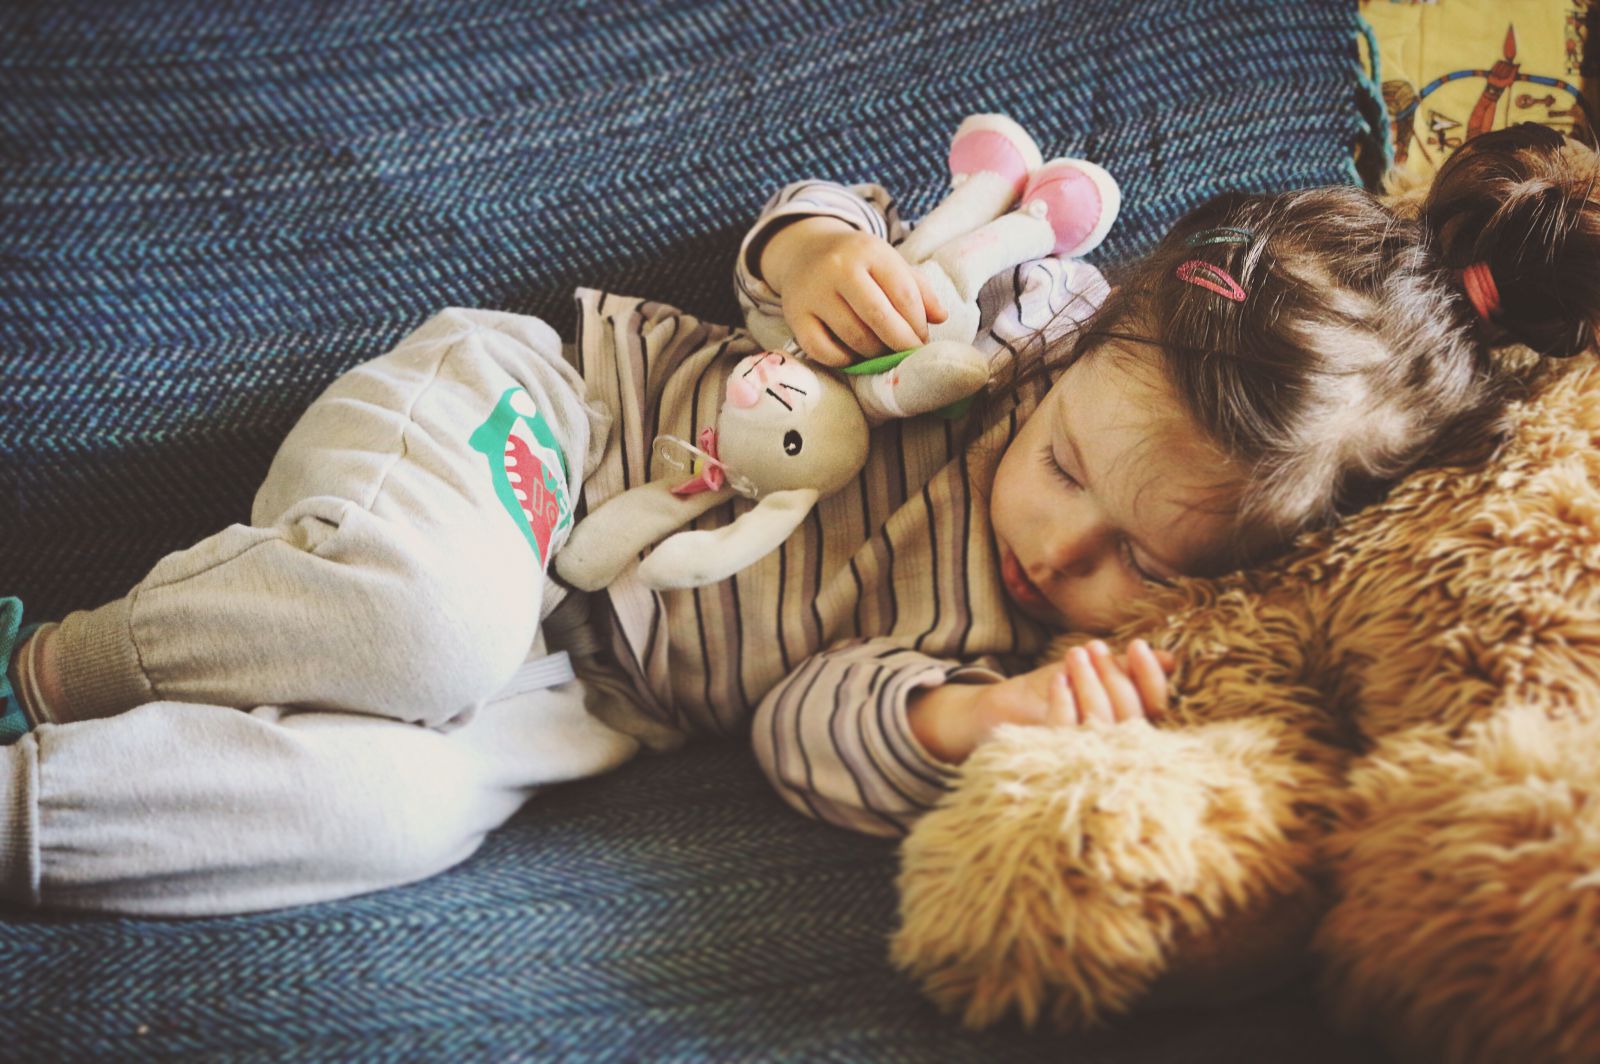 Criança dormindo no sofá segurando ursinho de pelúcia